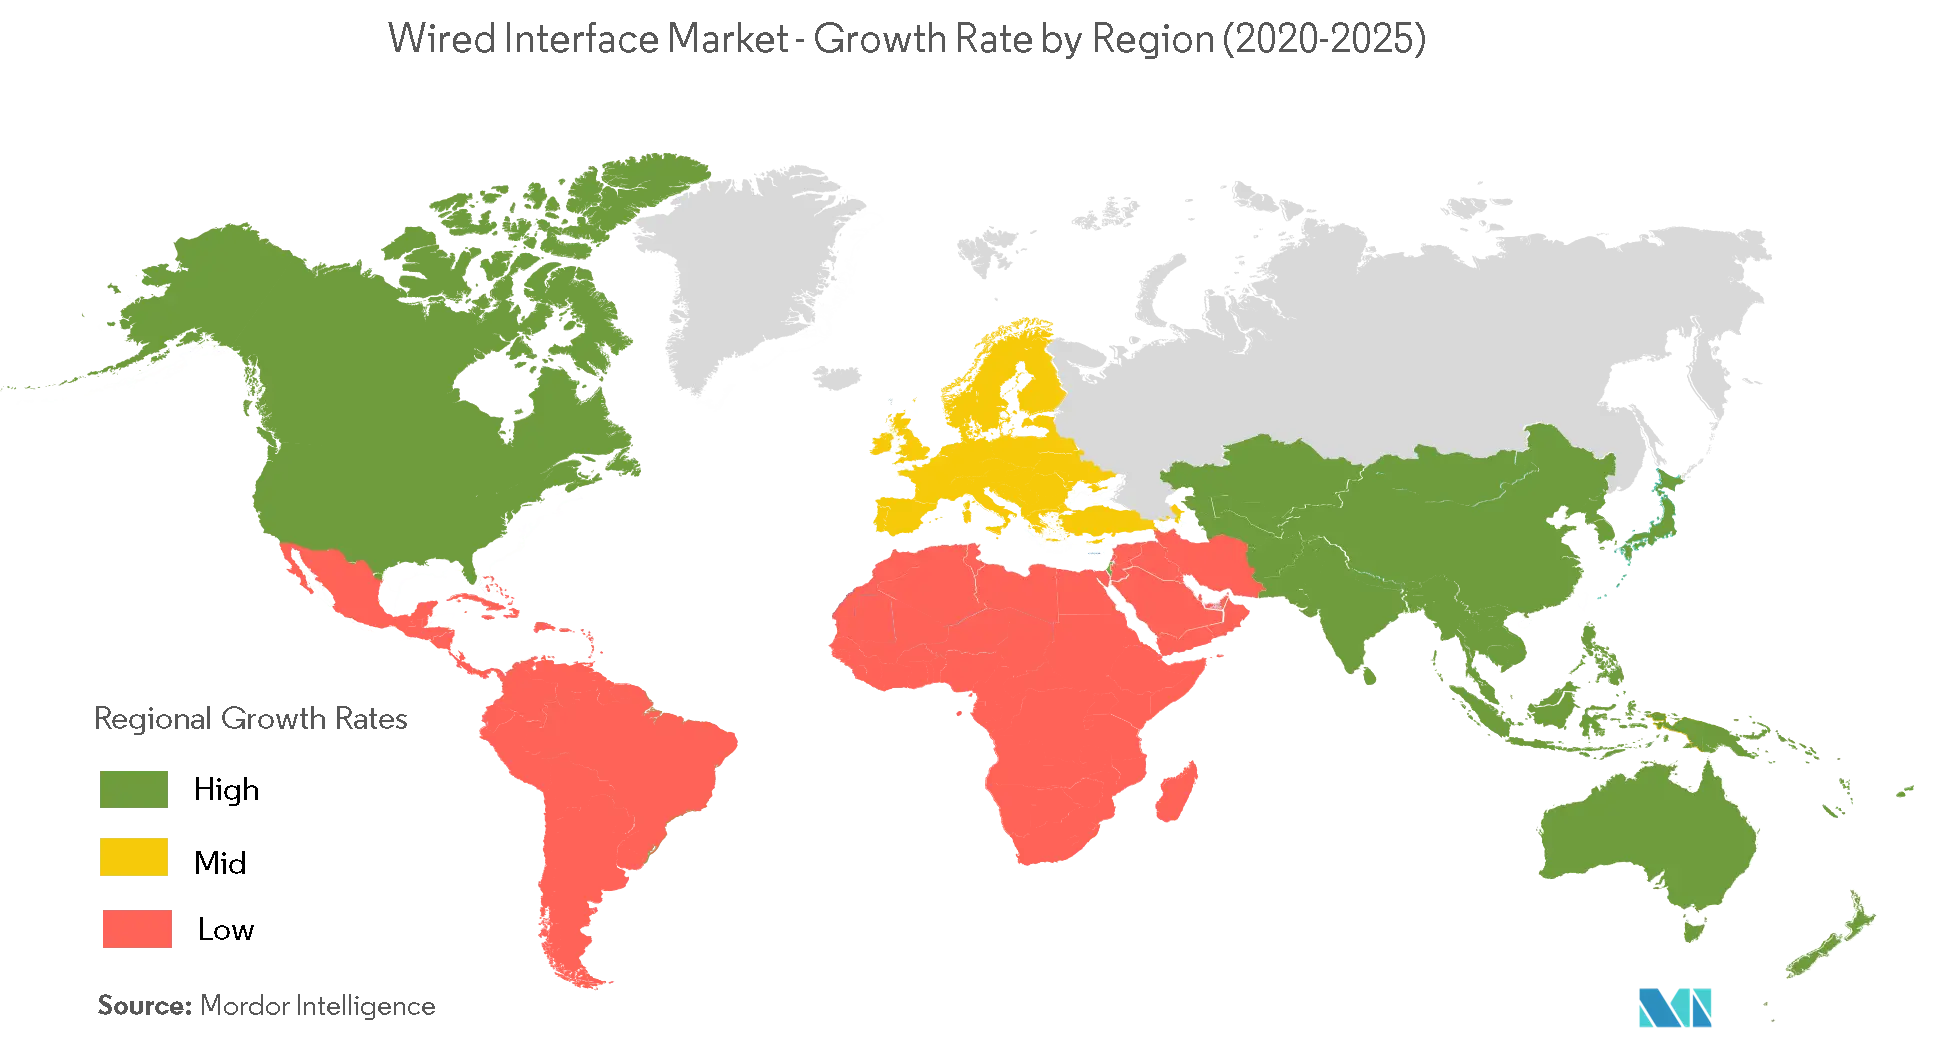 Mercado de interface com fio taxa de crescimento por região (2020-2025)